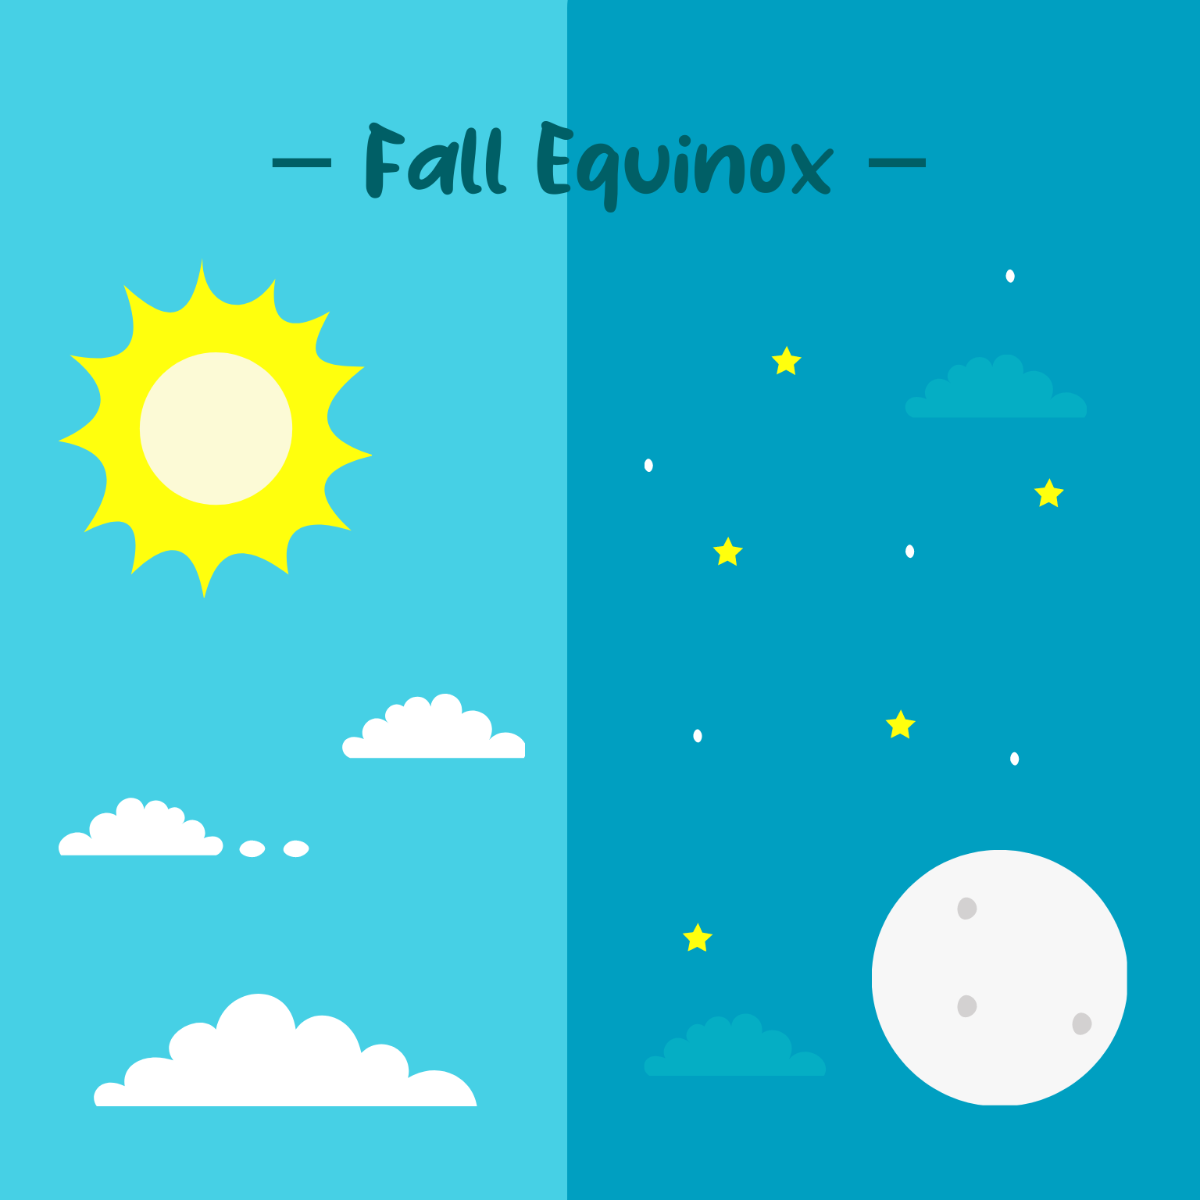 Fall Equinox Vector Art